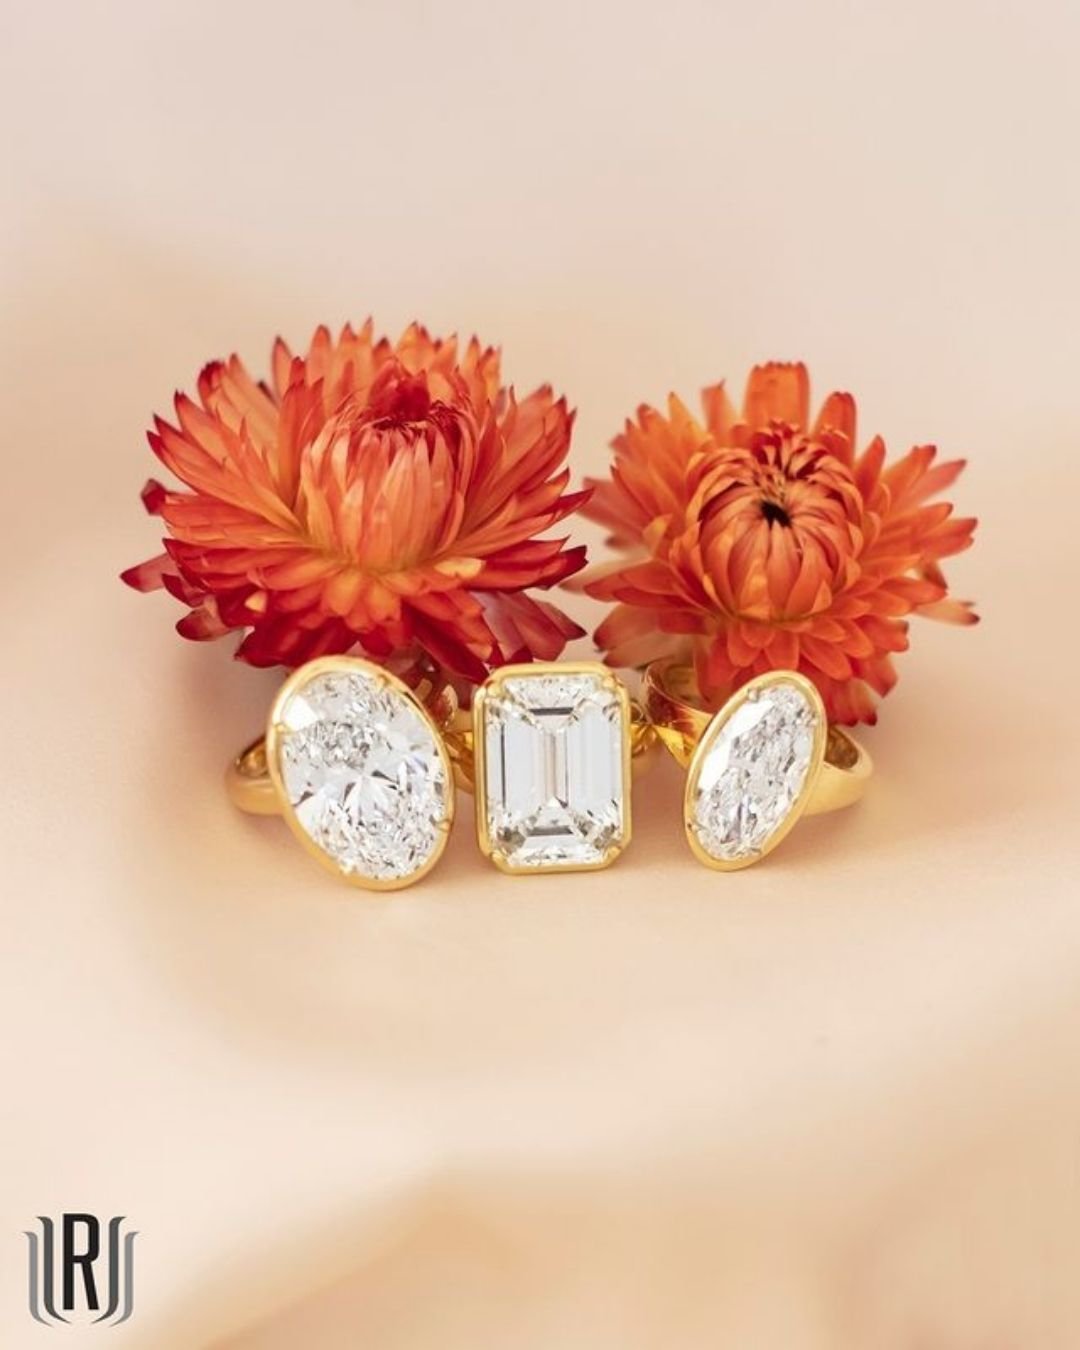 engagement rings for women diamond rings